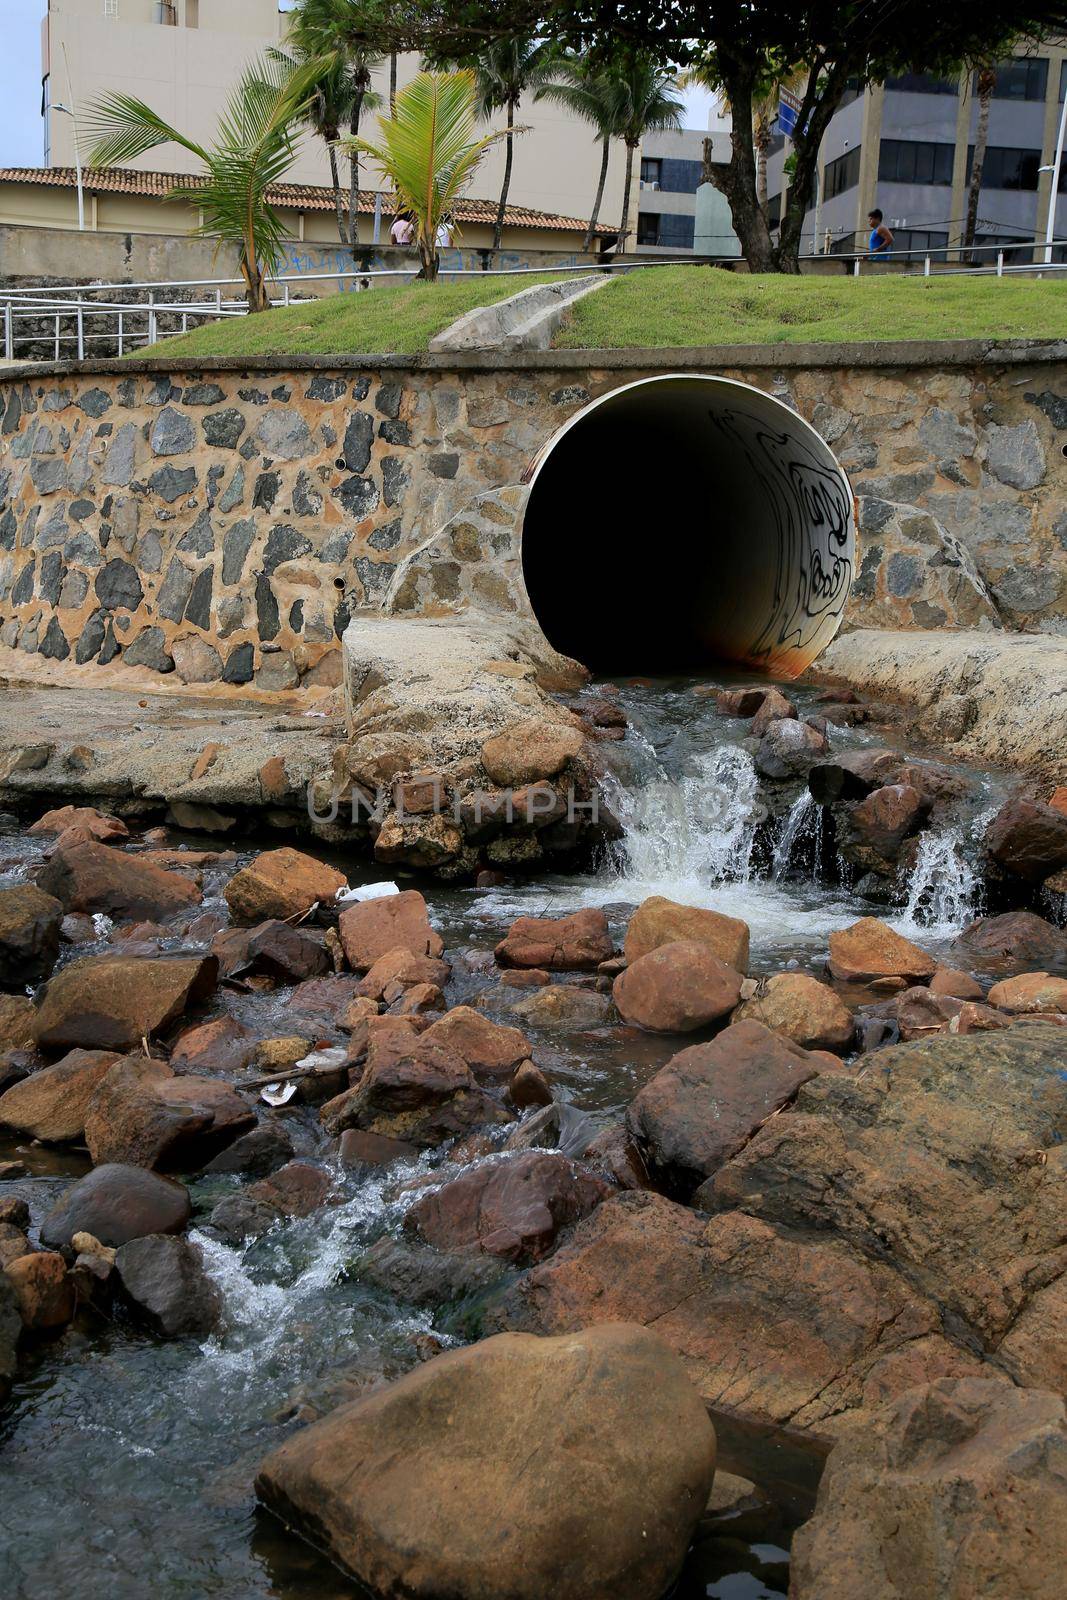 sewage duct and rainwater by joasouza